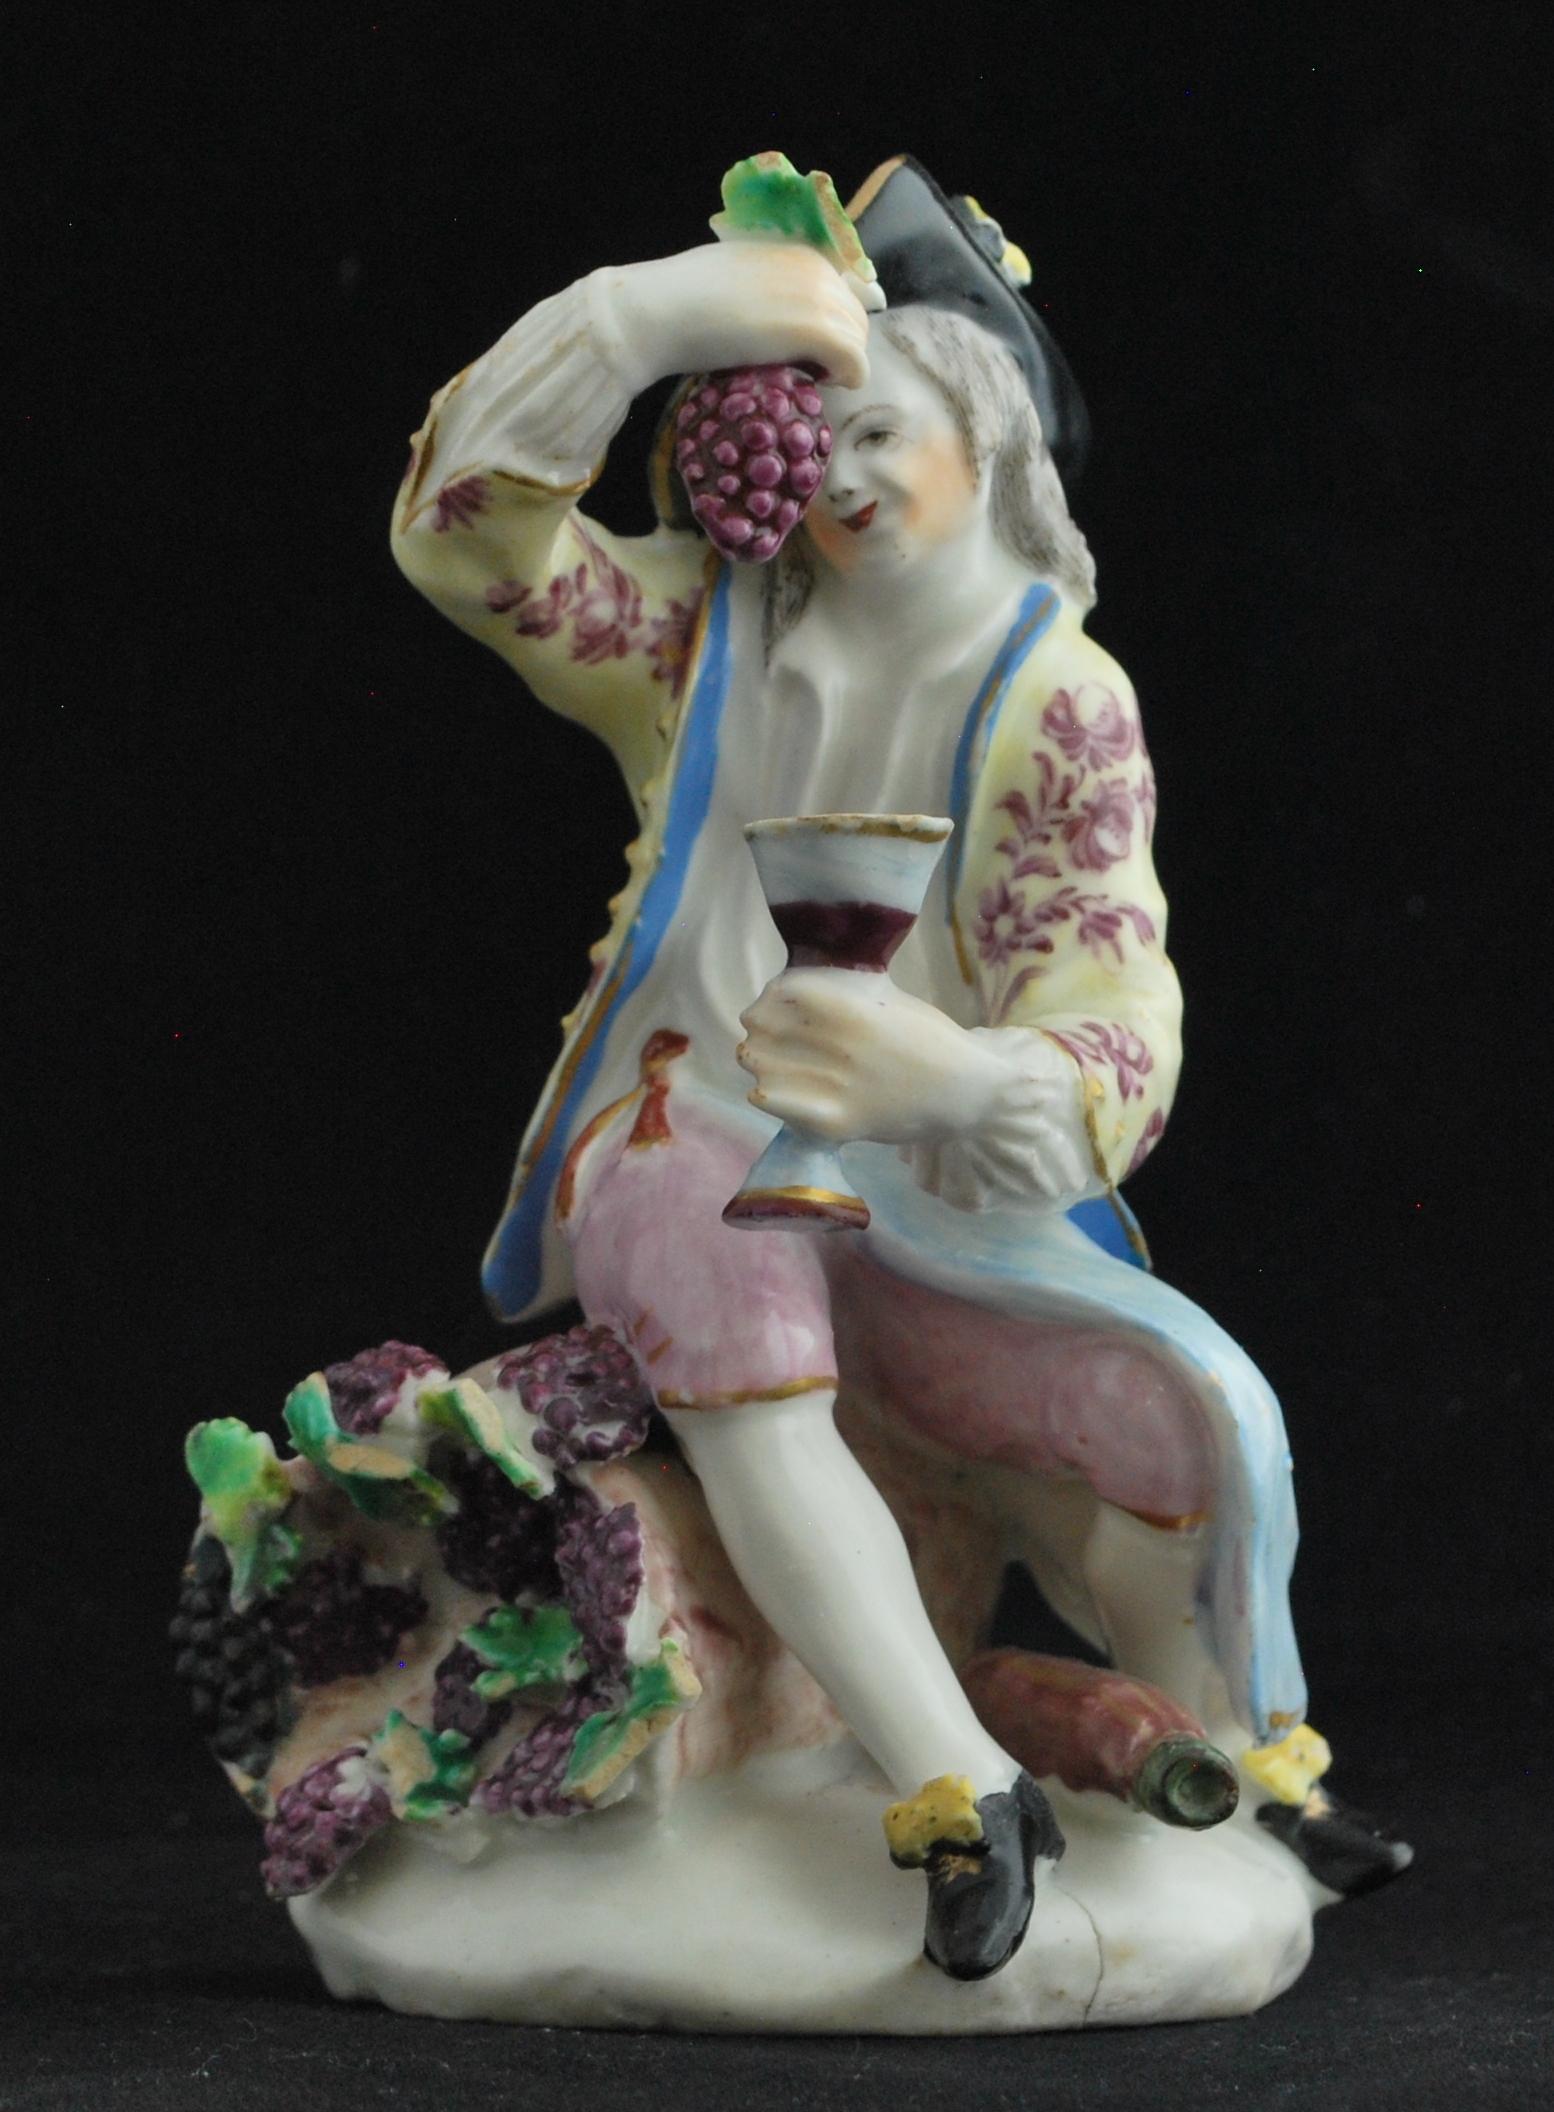 Dans une série de figures représentant les quatre saisons, l'automne est représenté par un jeune homme pressant des raisins dans une coupe, ce qui symbolise le temps des récoltes et rappelle les représentations classiques de Bacchus. Bien que les